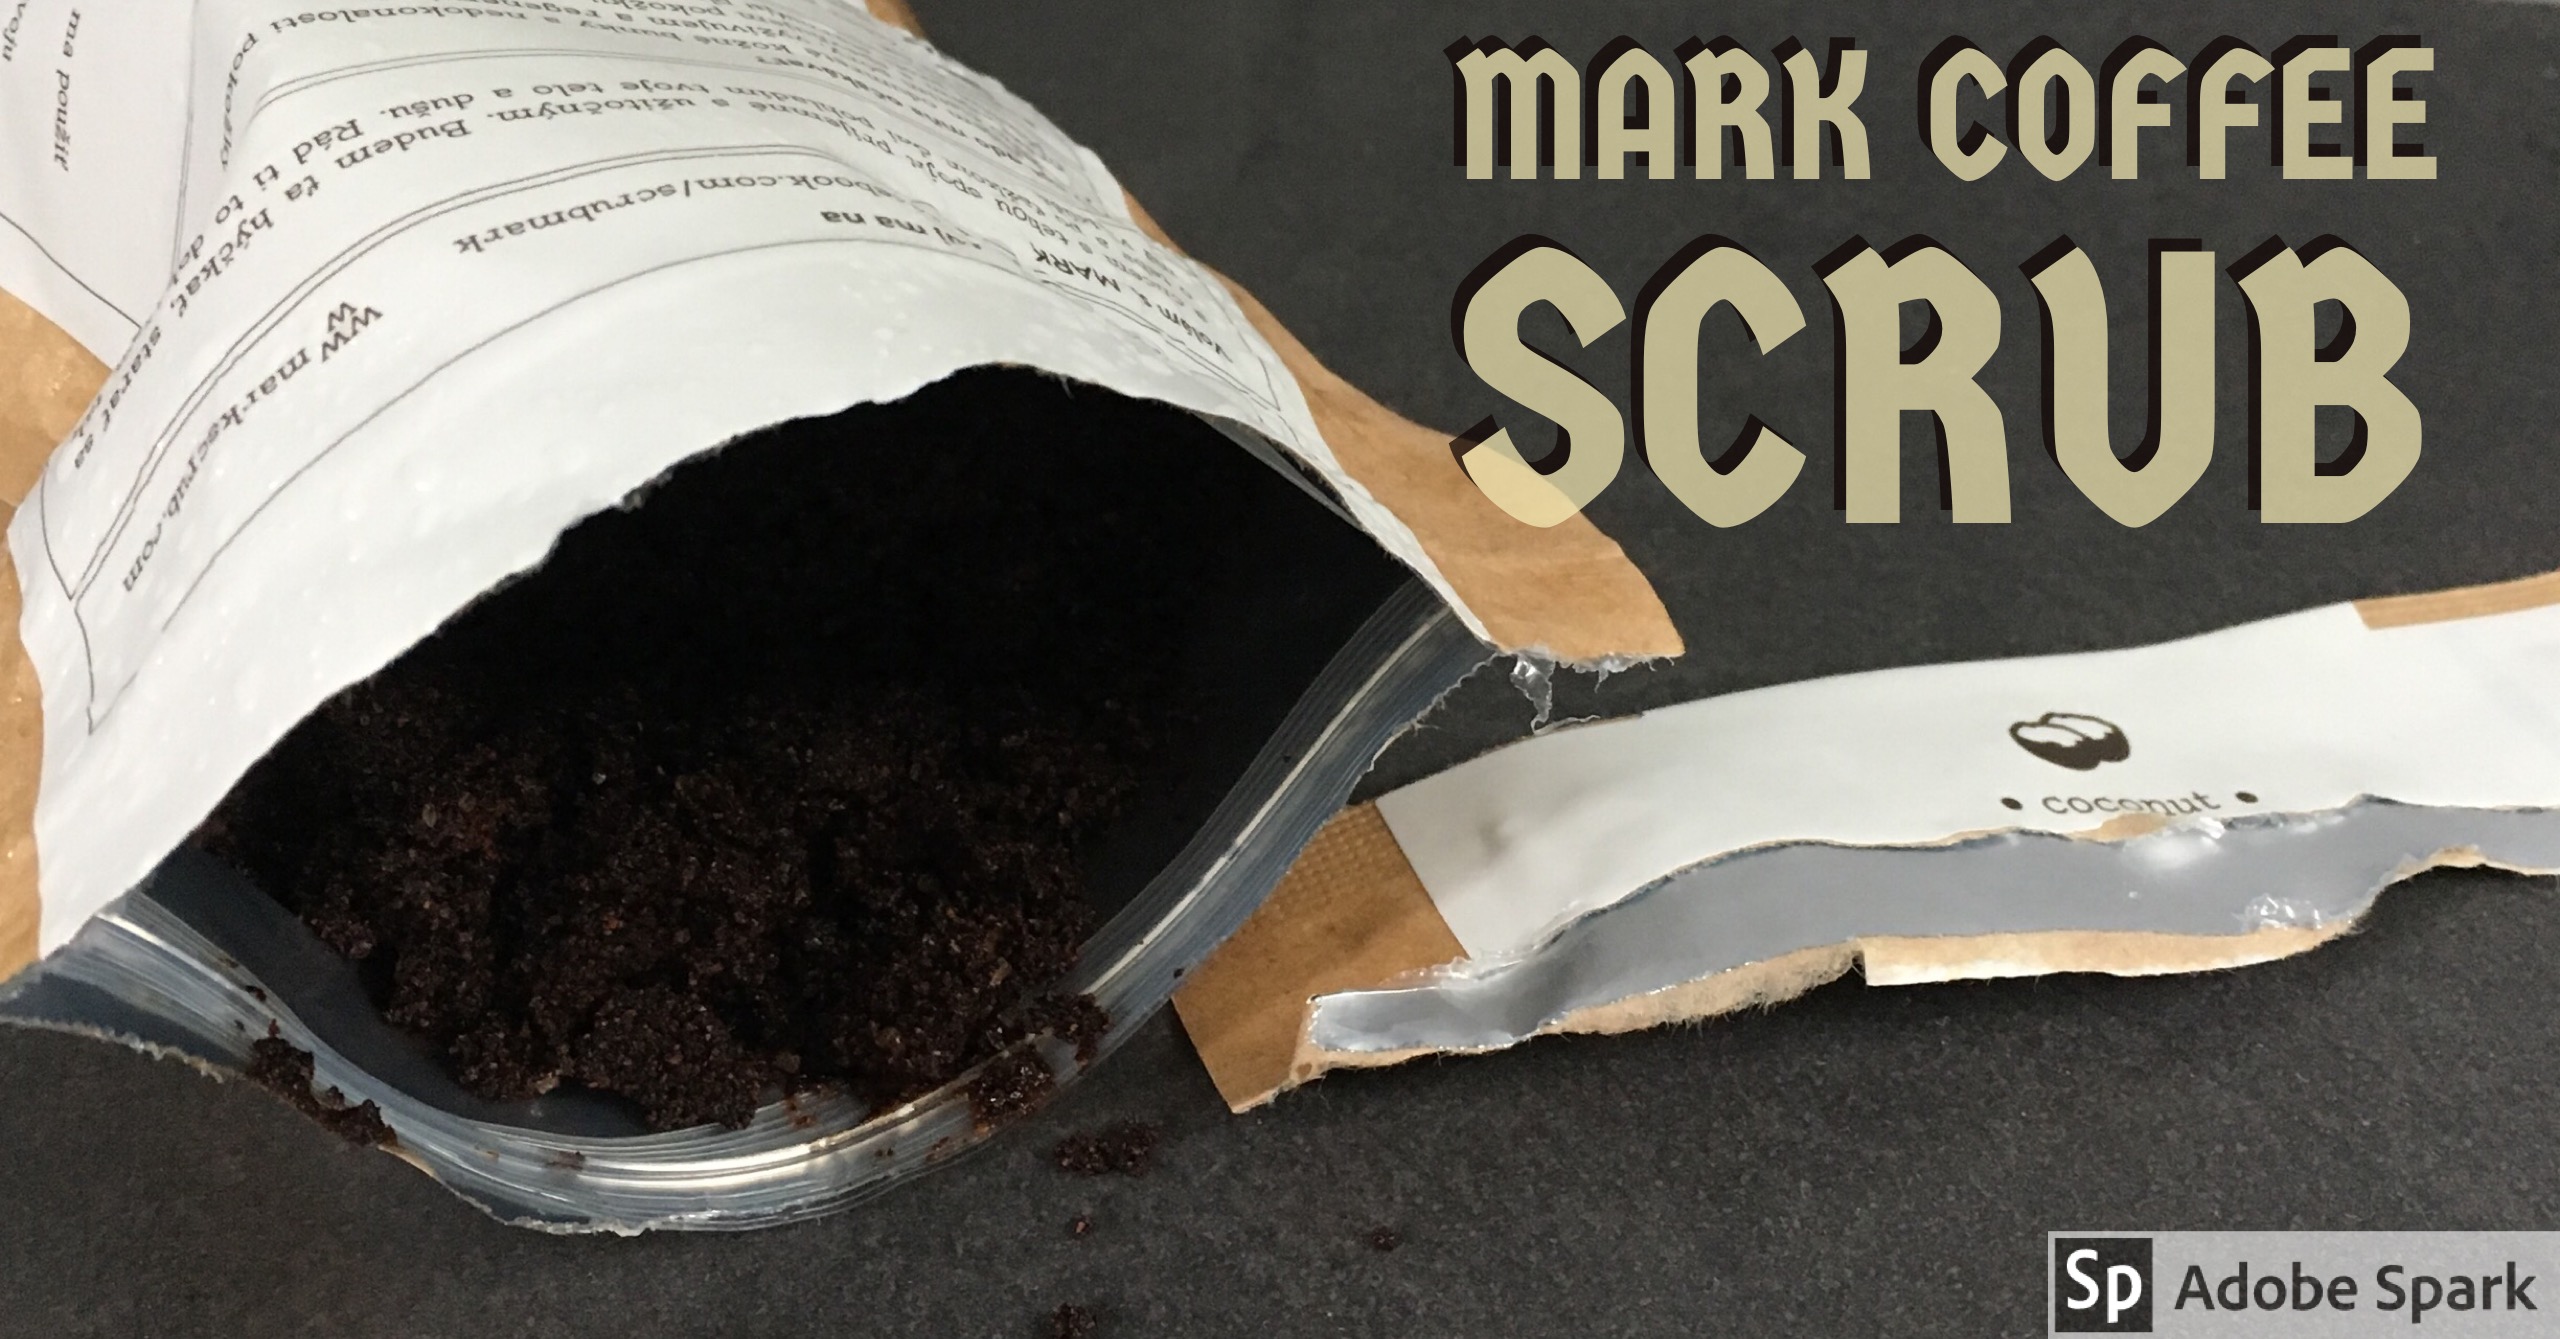 MARK coffee scrub